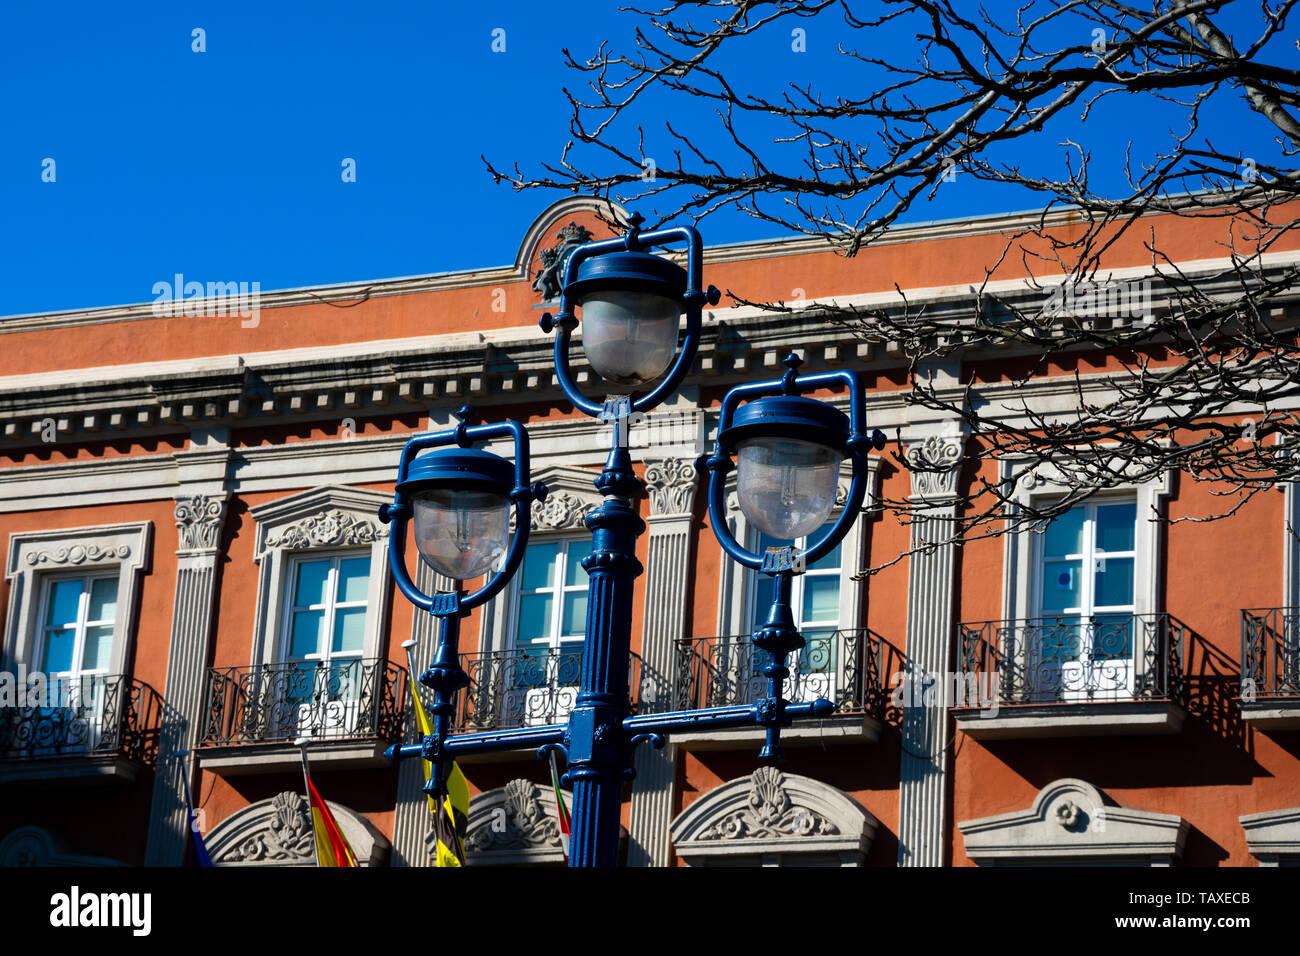 Vieille lampe de rue avec l'hôtel de ville en arrière-plan. Portugalete, Espagne Banque D'Images